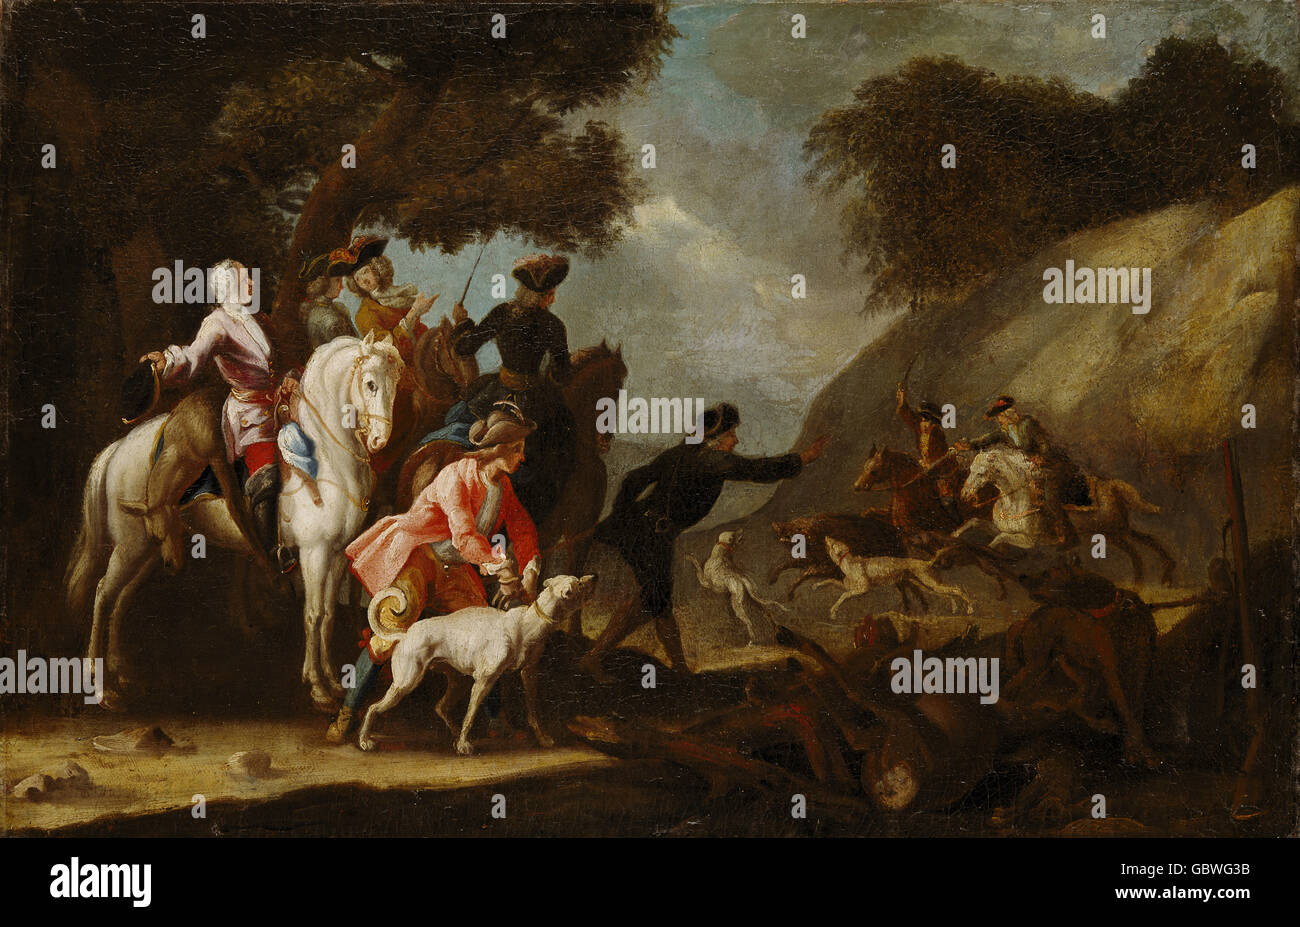 Jagd, Wildschweine, Coursing, Wildschweinjagd, Malerei, süddeutscher Meister, um 1750, Zusatzrechte-Clearences-nicht vorhanden Stockfoto